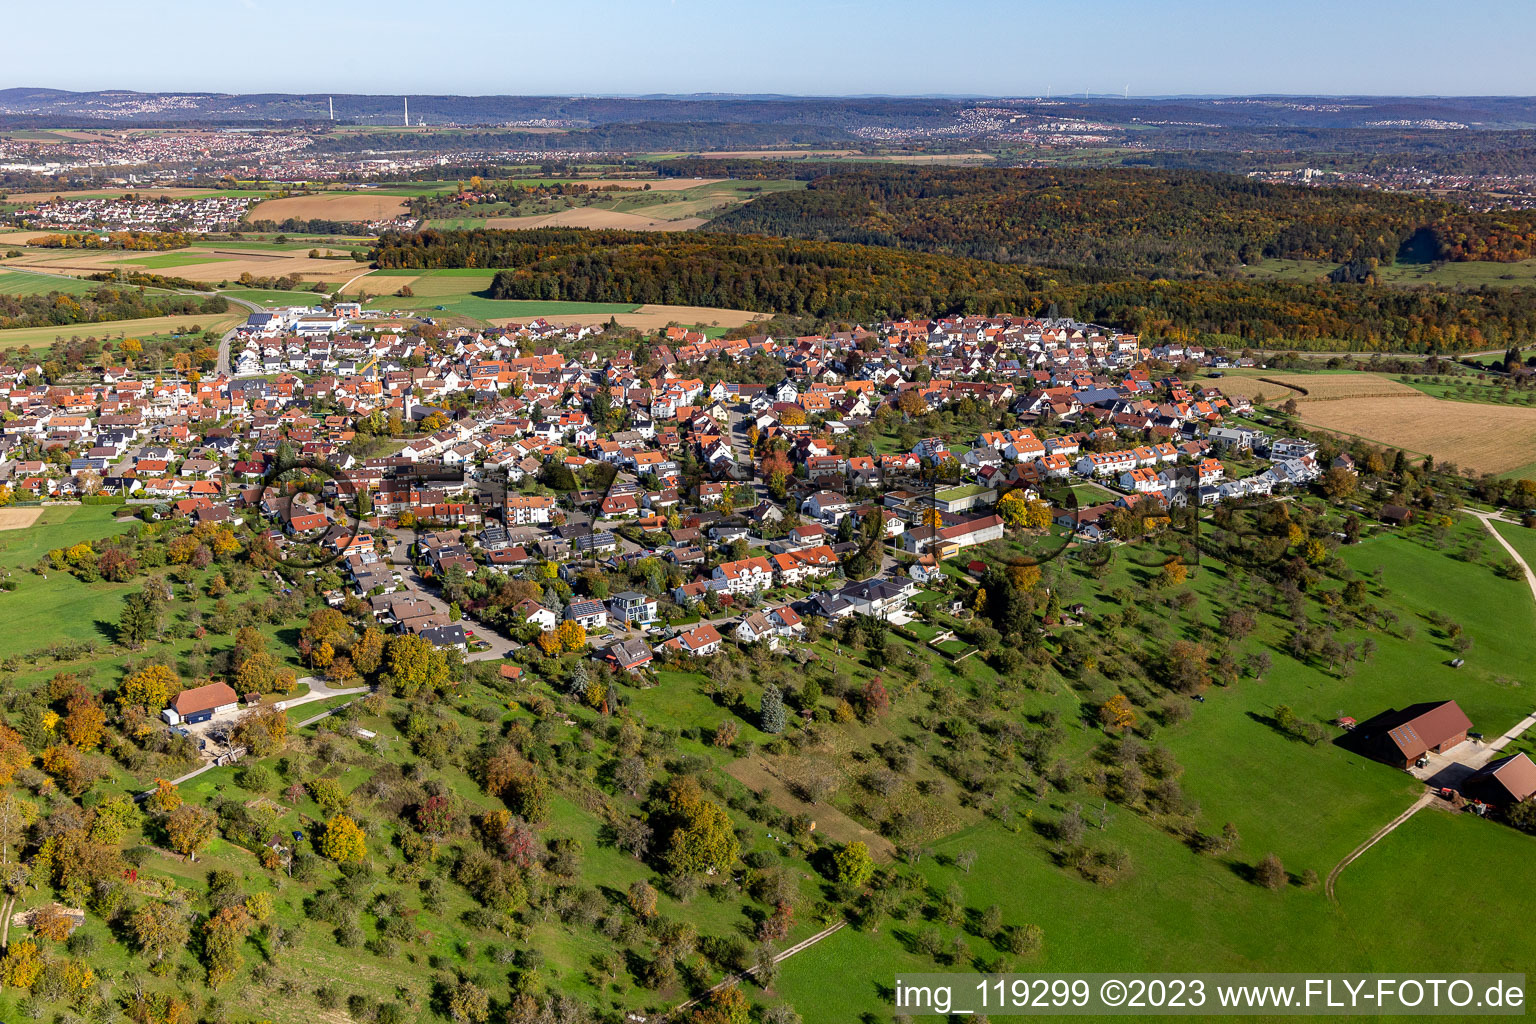 Nürtingen im Bundesland Baden-Württemberg, Deutschland aus der Luft betrachtet